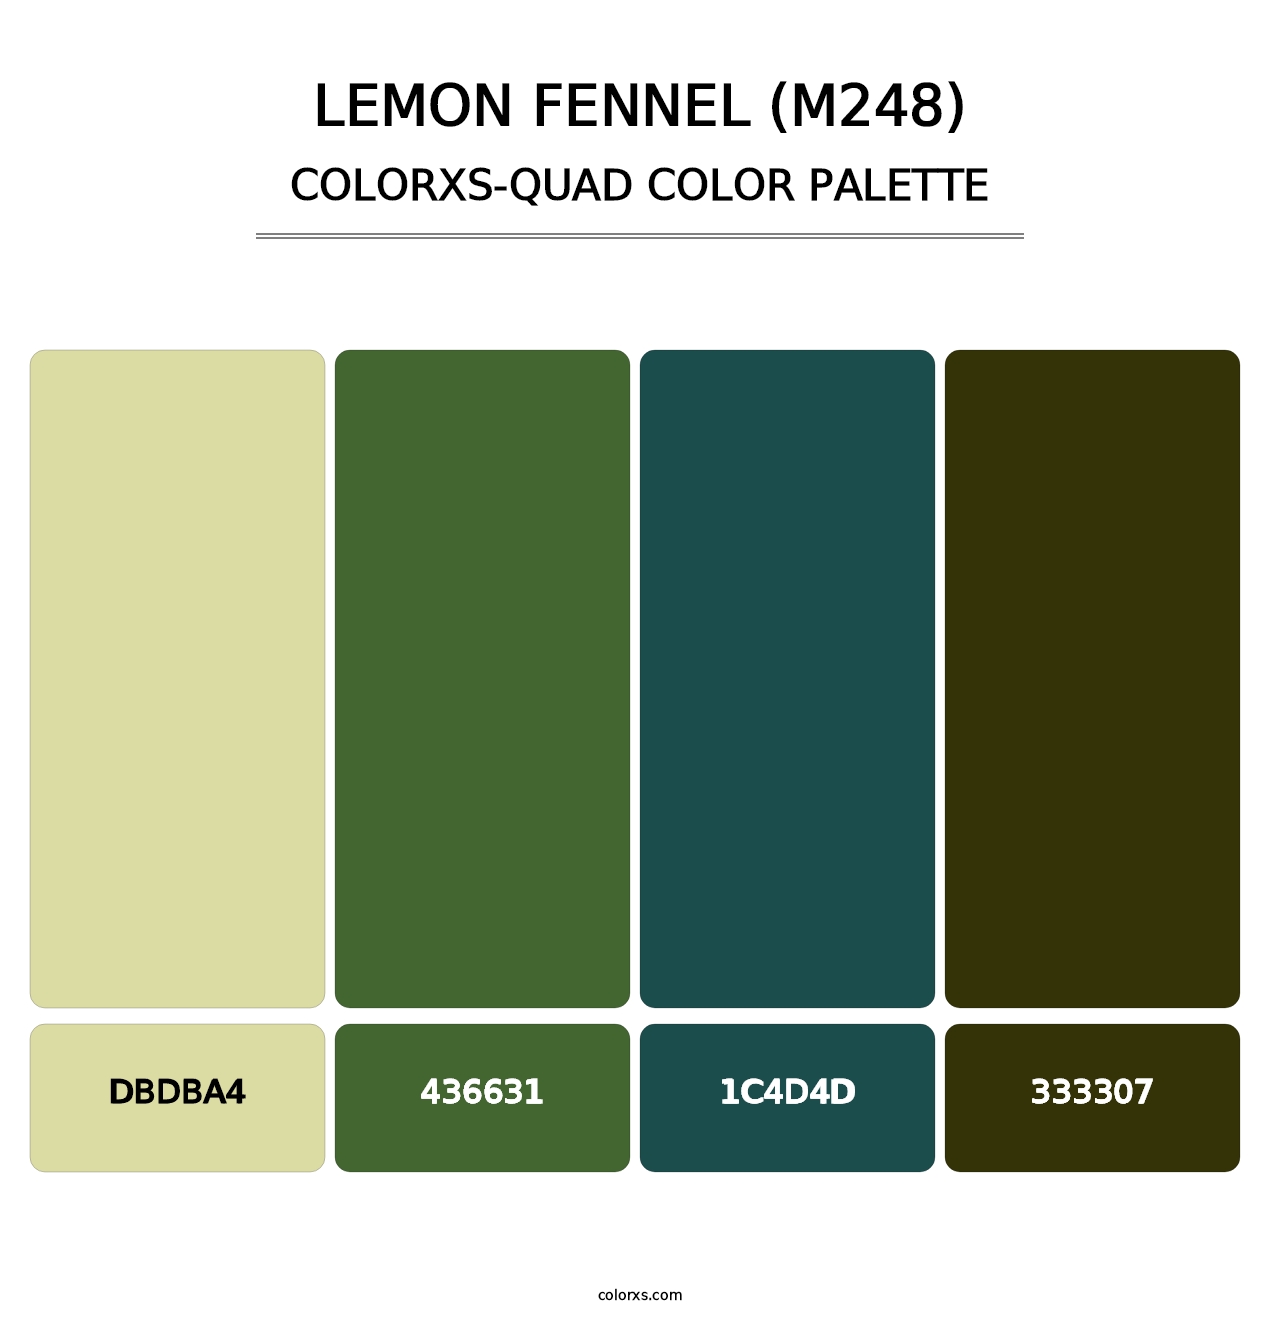 Lemon Fennel (M248) - Colorxs Quad Palette